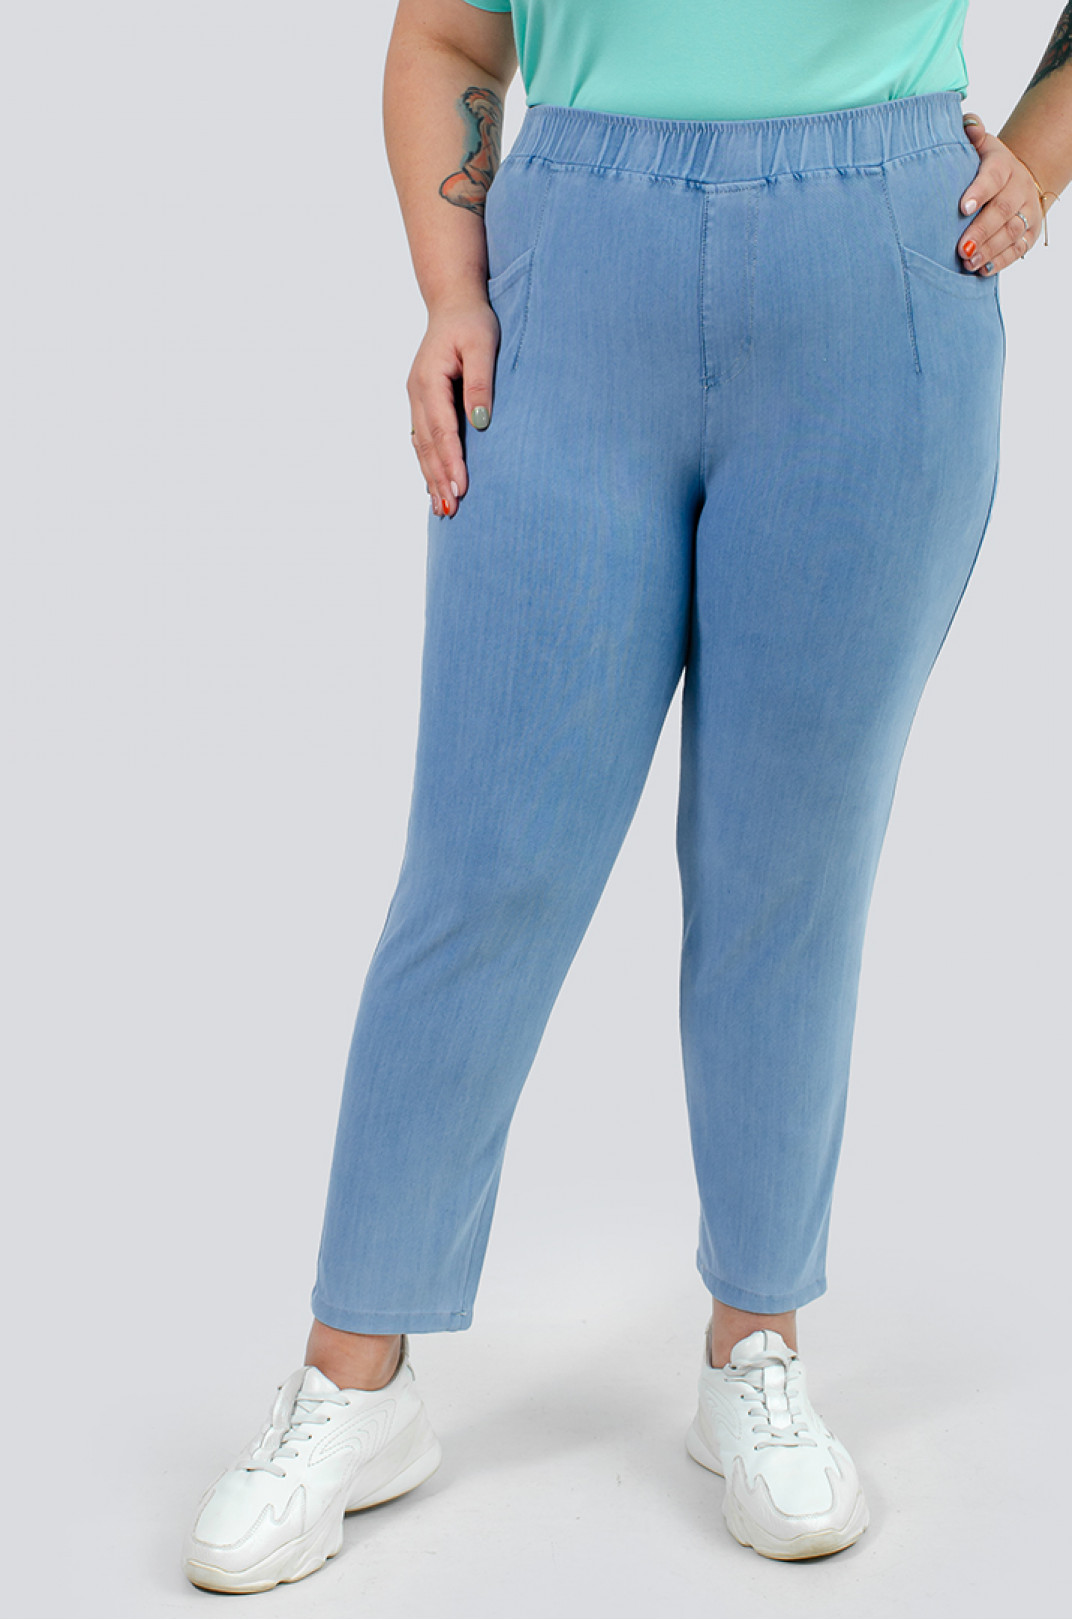 Легкие светло-голубые джинсы 7/8 больших размеров